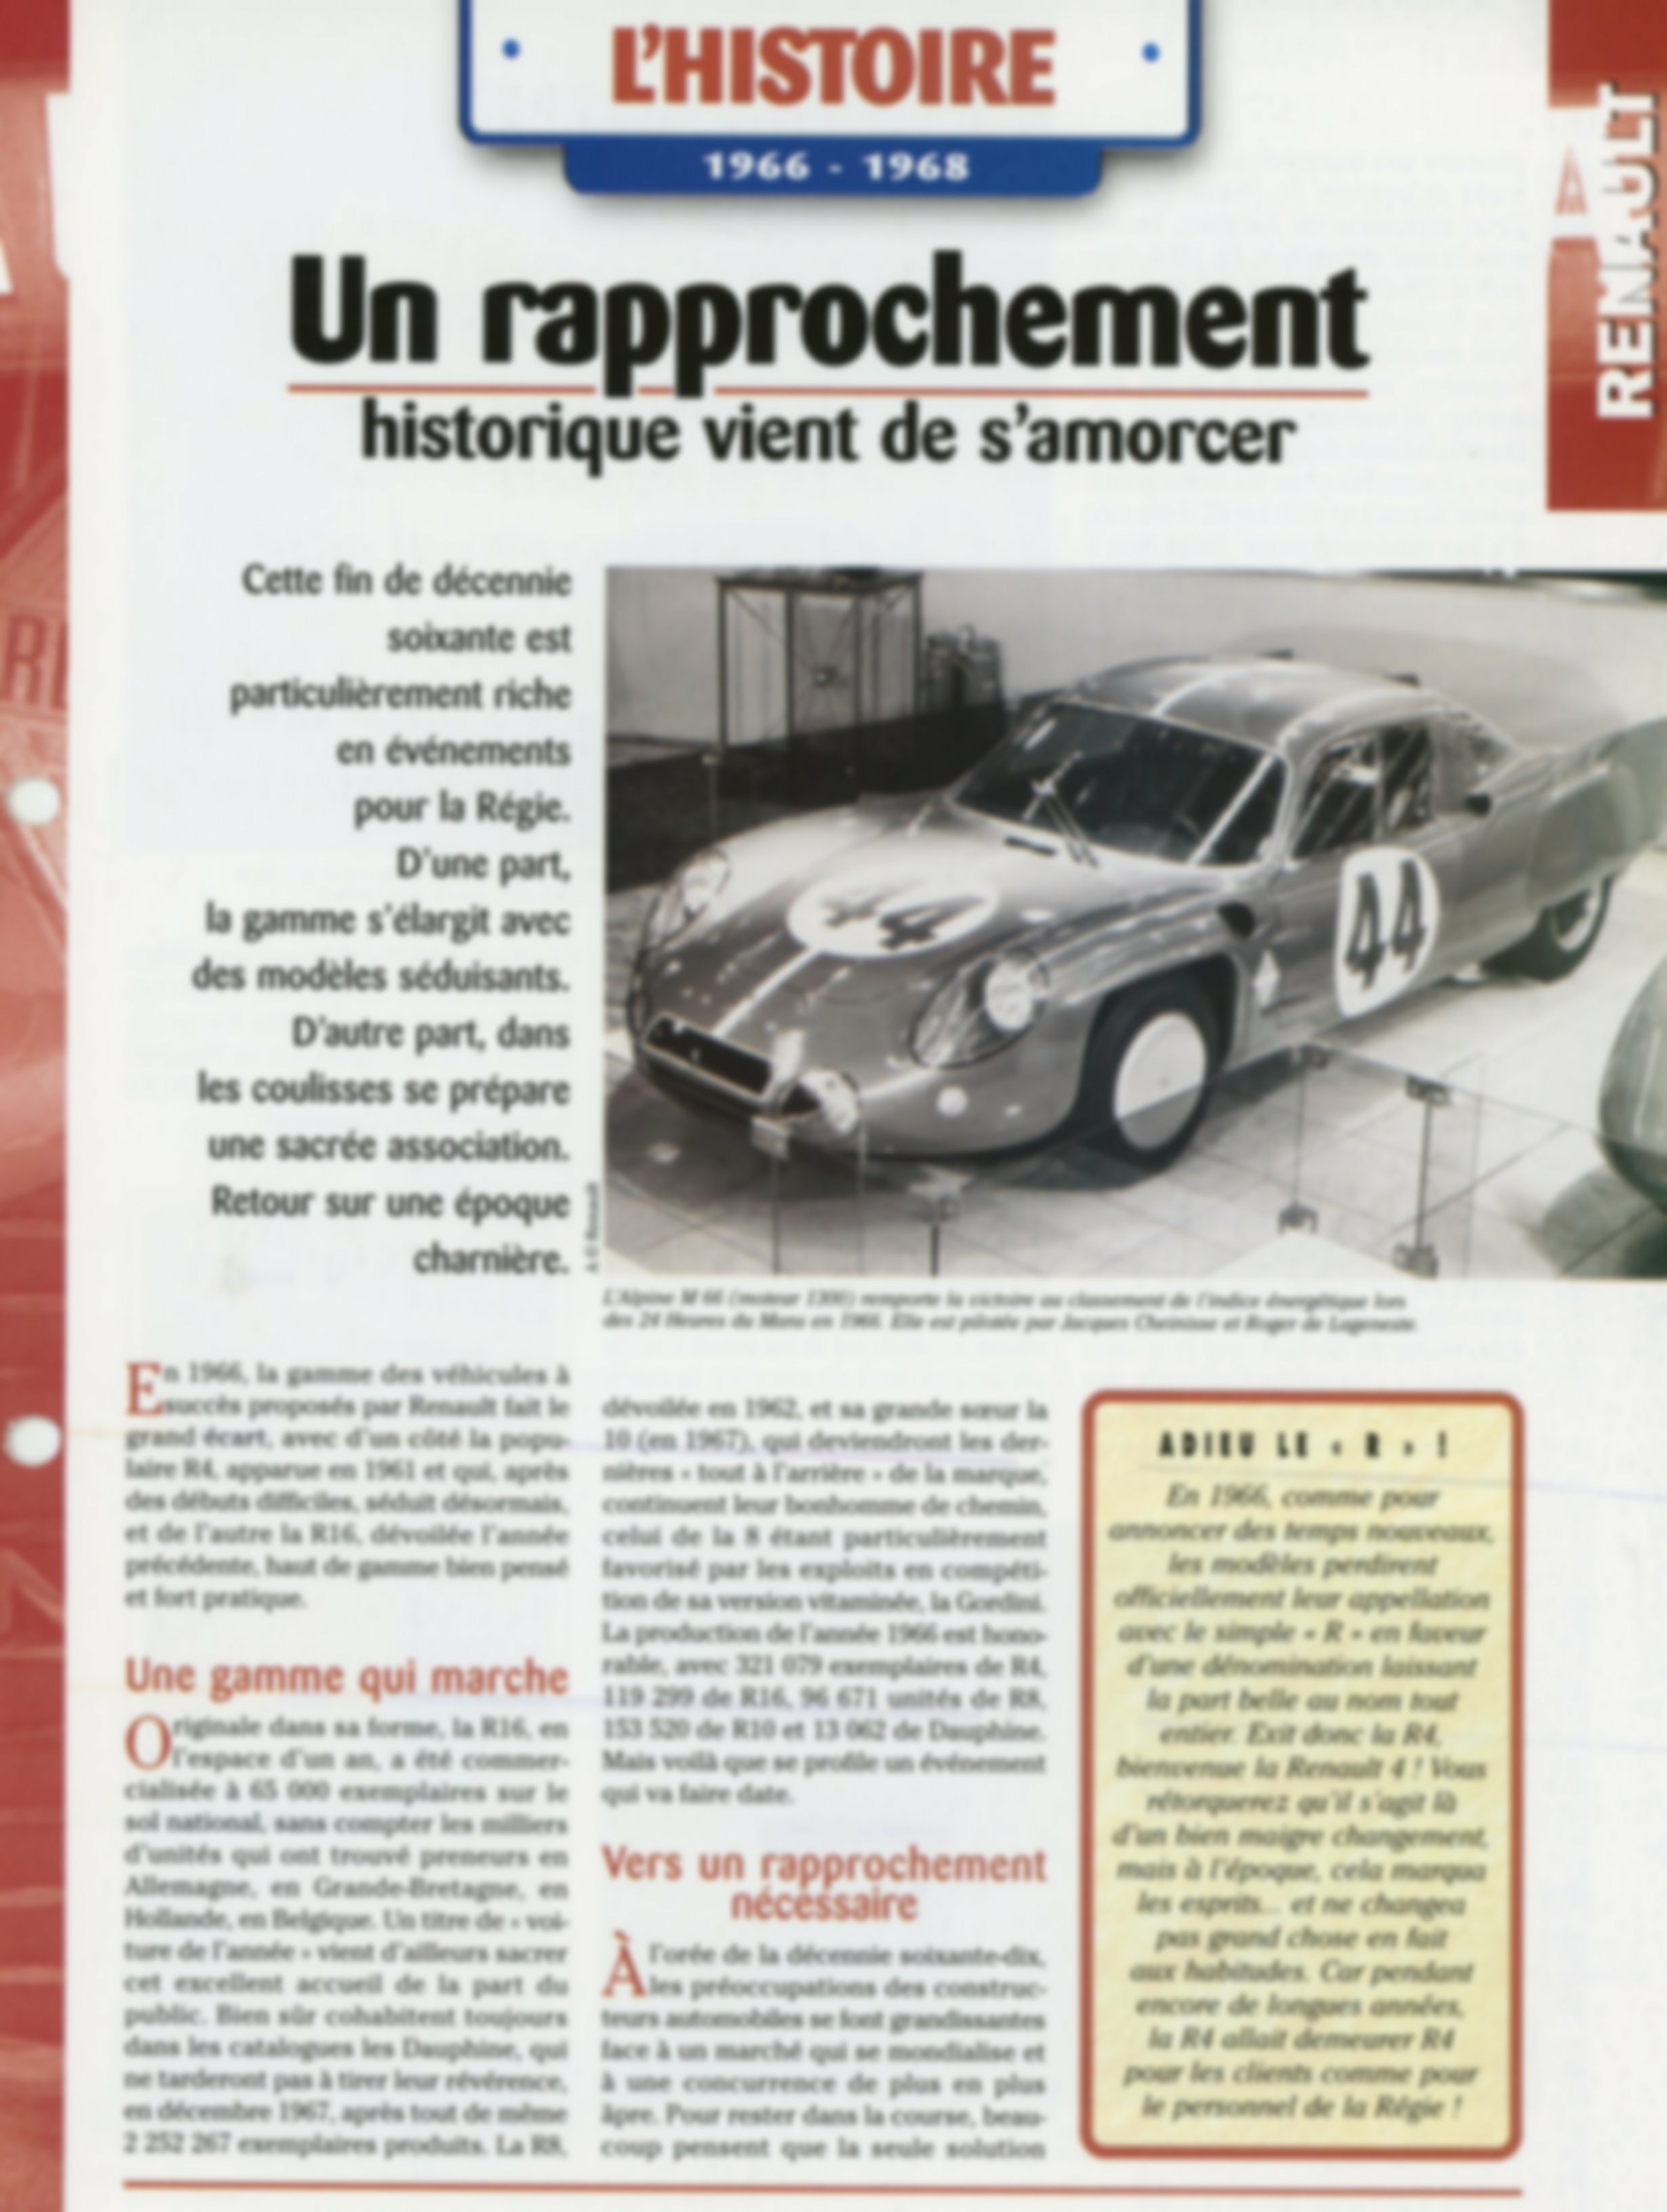 FICHE-RENAULT-histoire-1966-1968-alpine-m66-Fiche-auto-lemasterbrockers-cars-card-HACHETTE